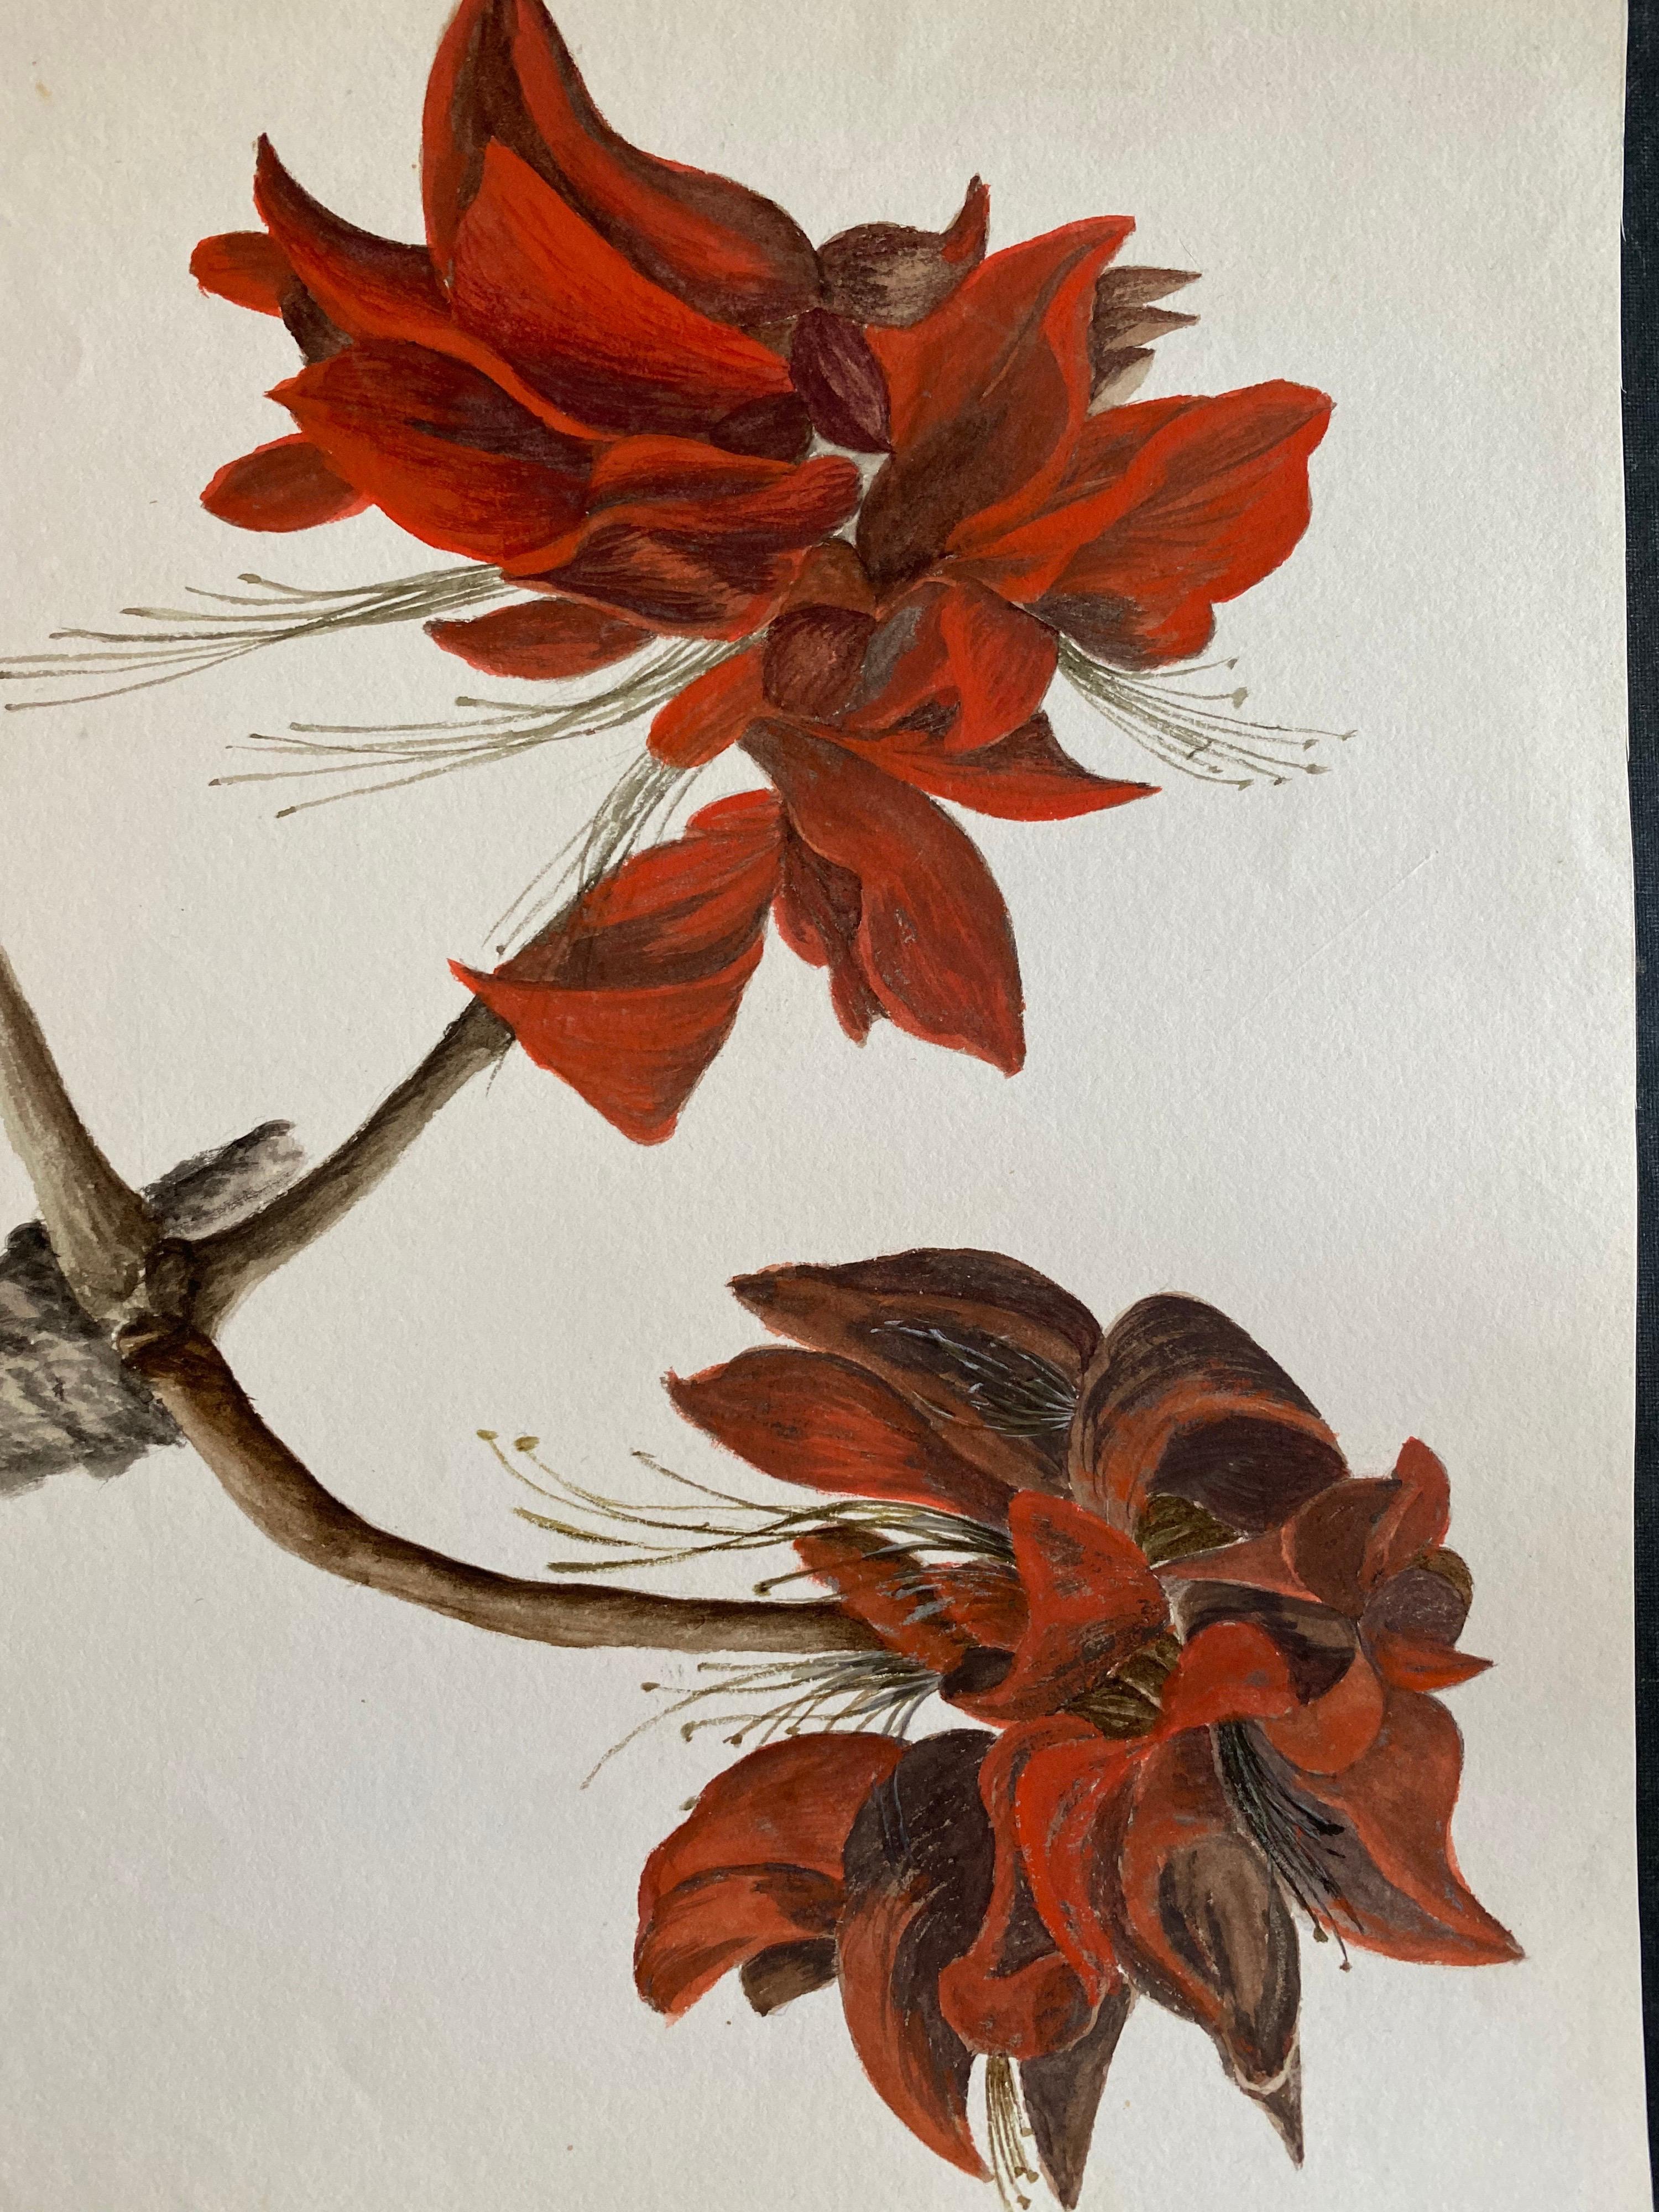 Ein sehr schönes originales englisches botanisches Aquarell, das diese schöne Darstellung einer Blume/Pflanze zeigt. Das Werk stammt aus einer Privatsammlung in Surrey, England, und war Teil eines Albums mit Werken, die der Künstler in den frühen